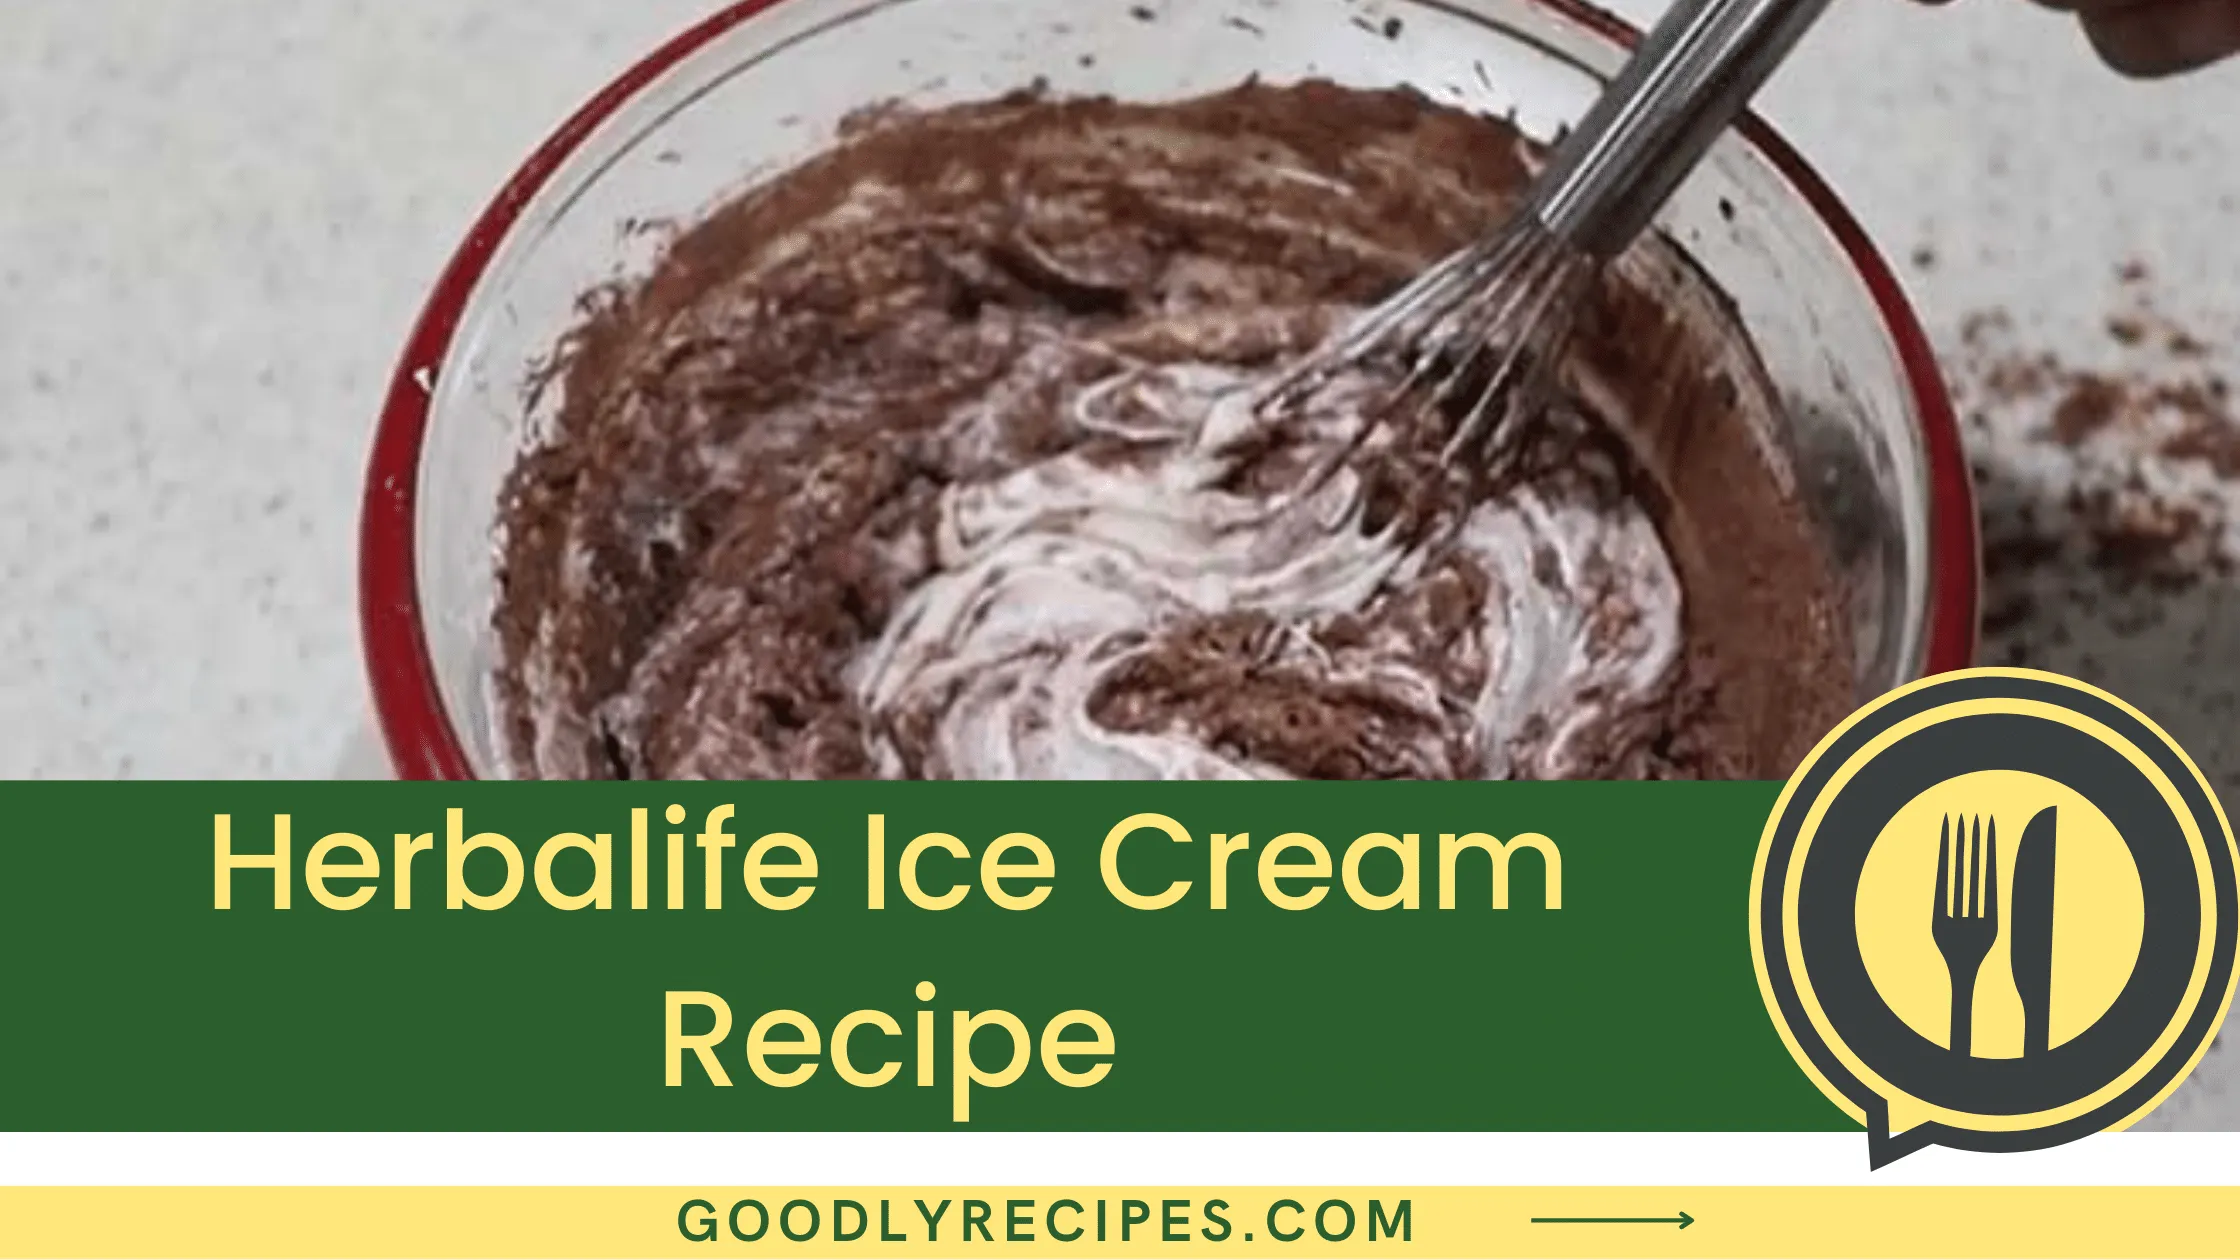 Herbalife Ice Cream Recipe